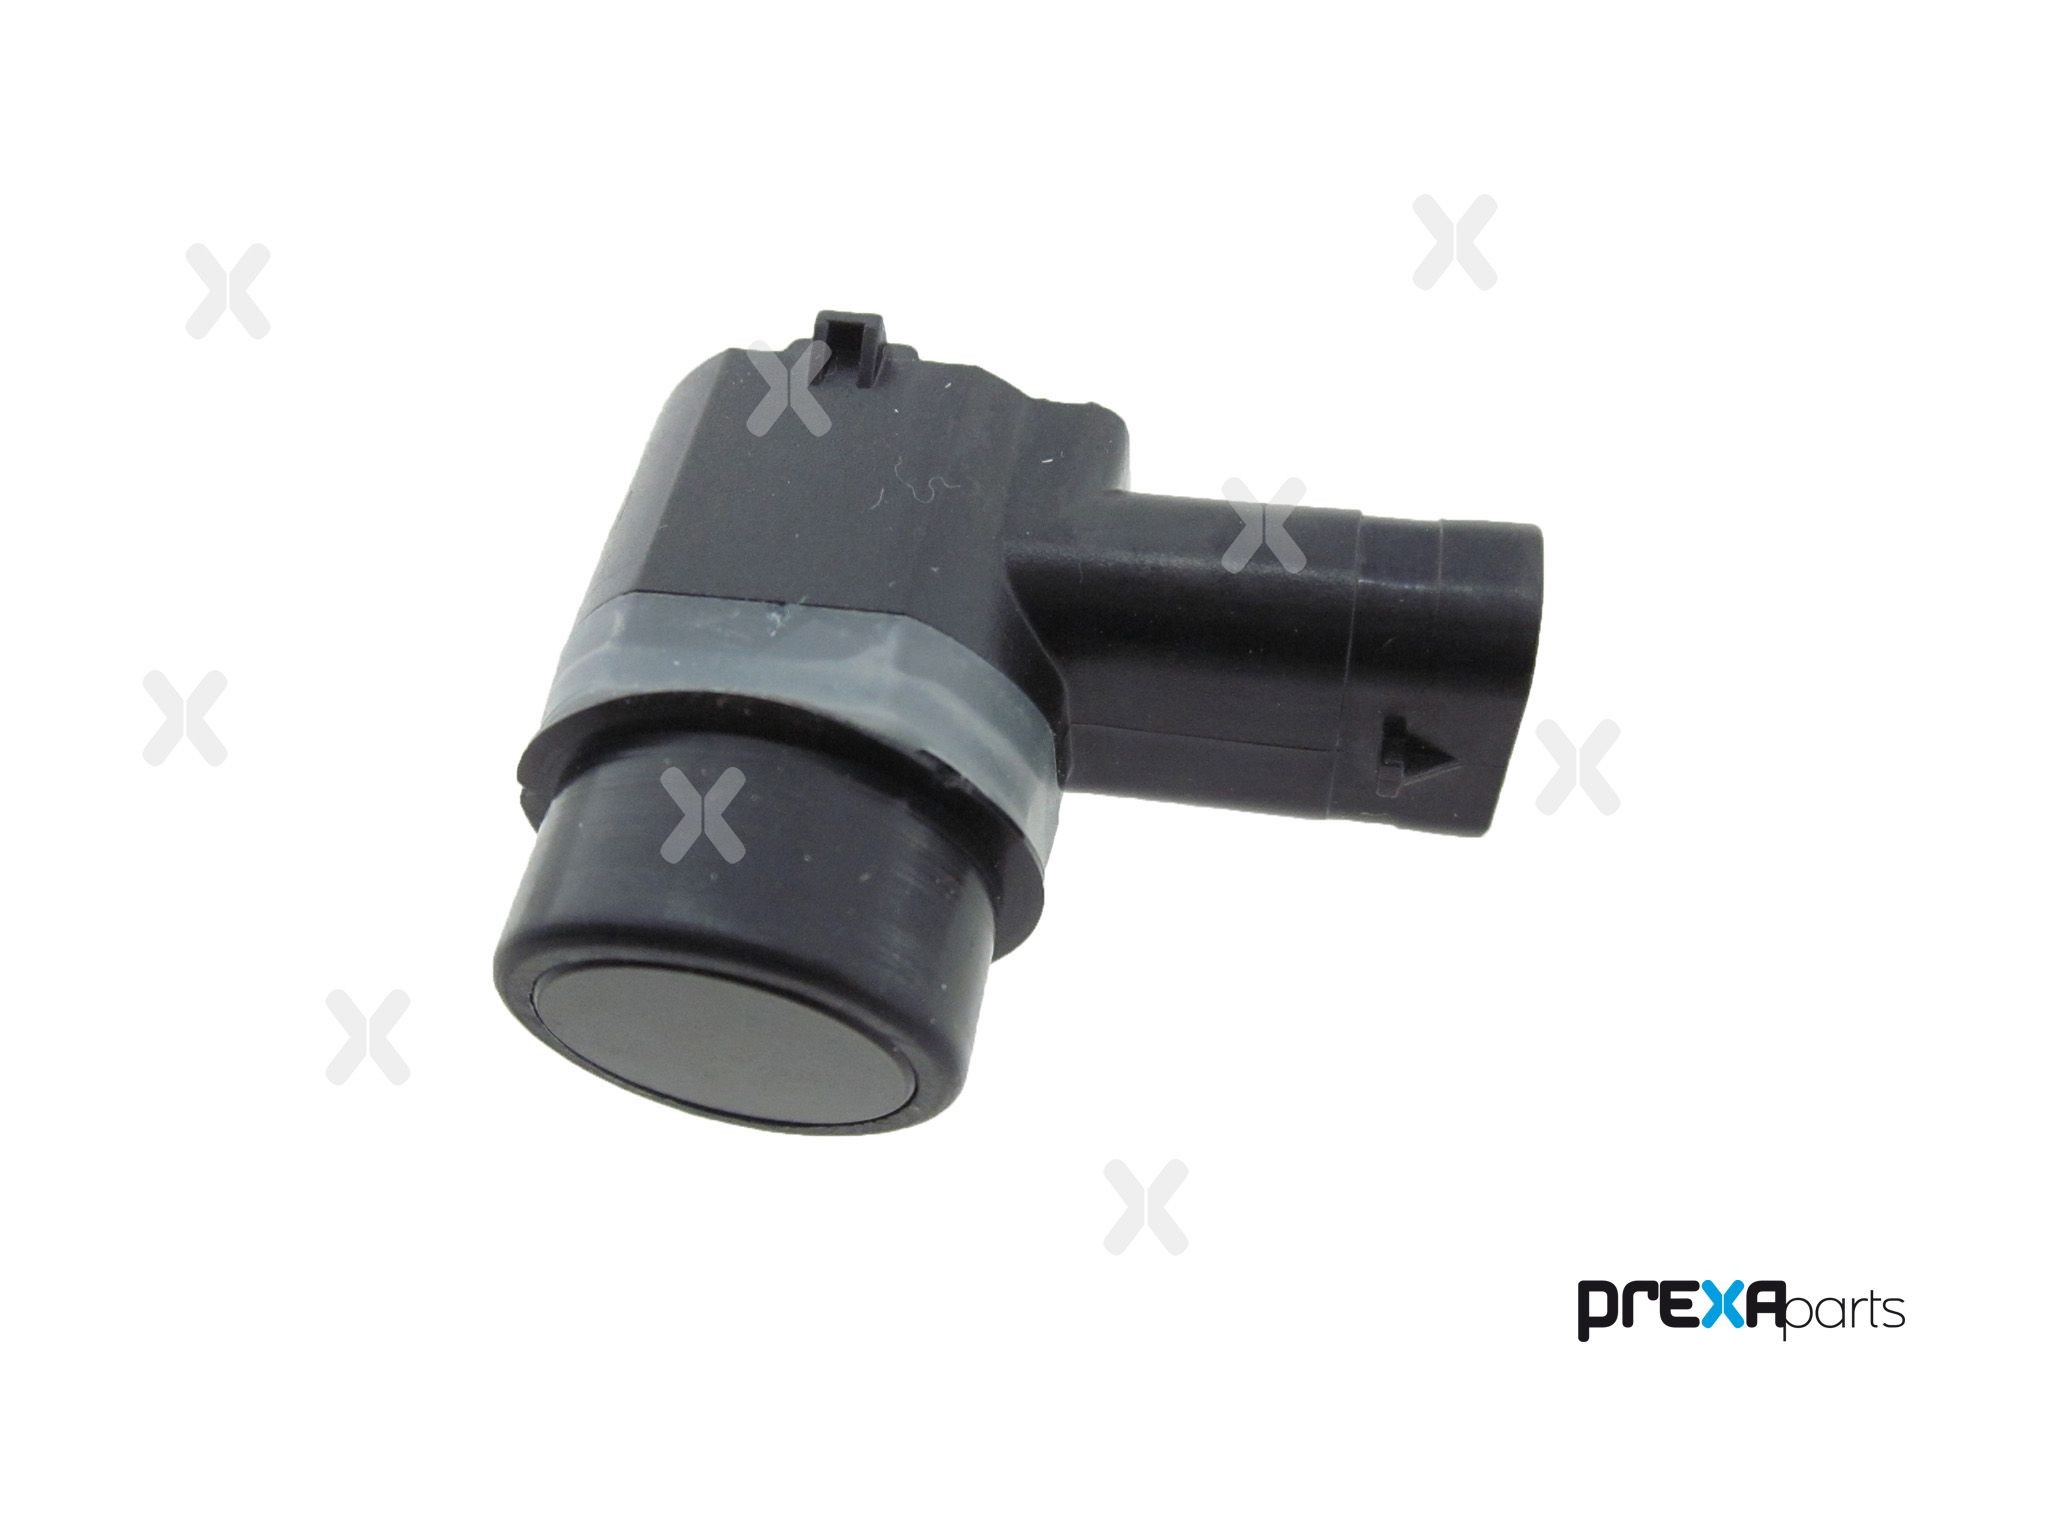 PREXAparts P103002 Parking sensor 2016556